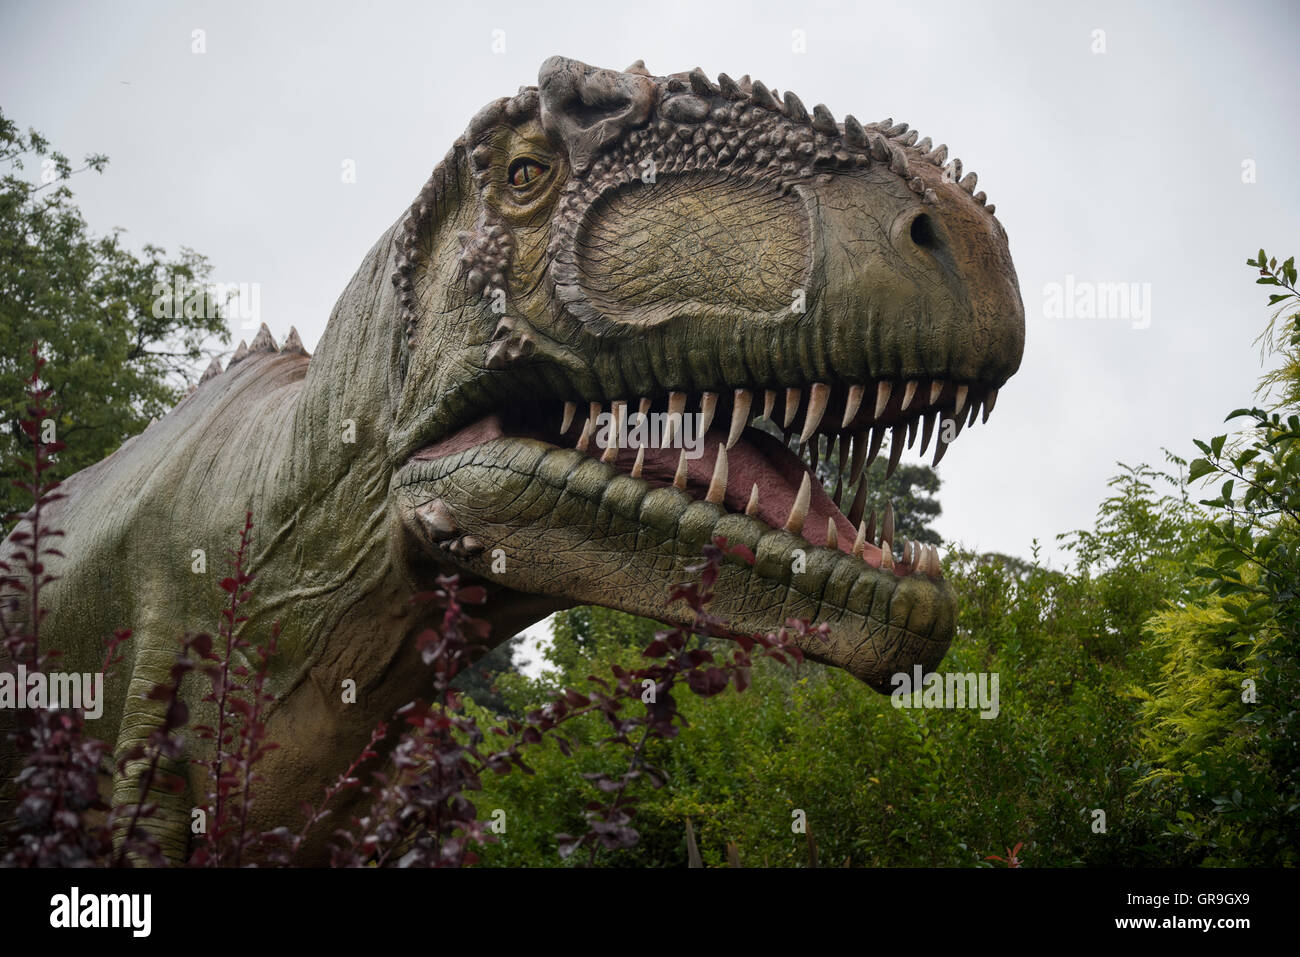 Gigantosaurus dinosaurio en el Zoológico de Chester, Cheshire, Reino Unido Foto de stock